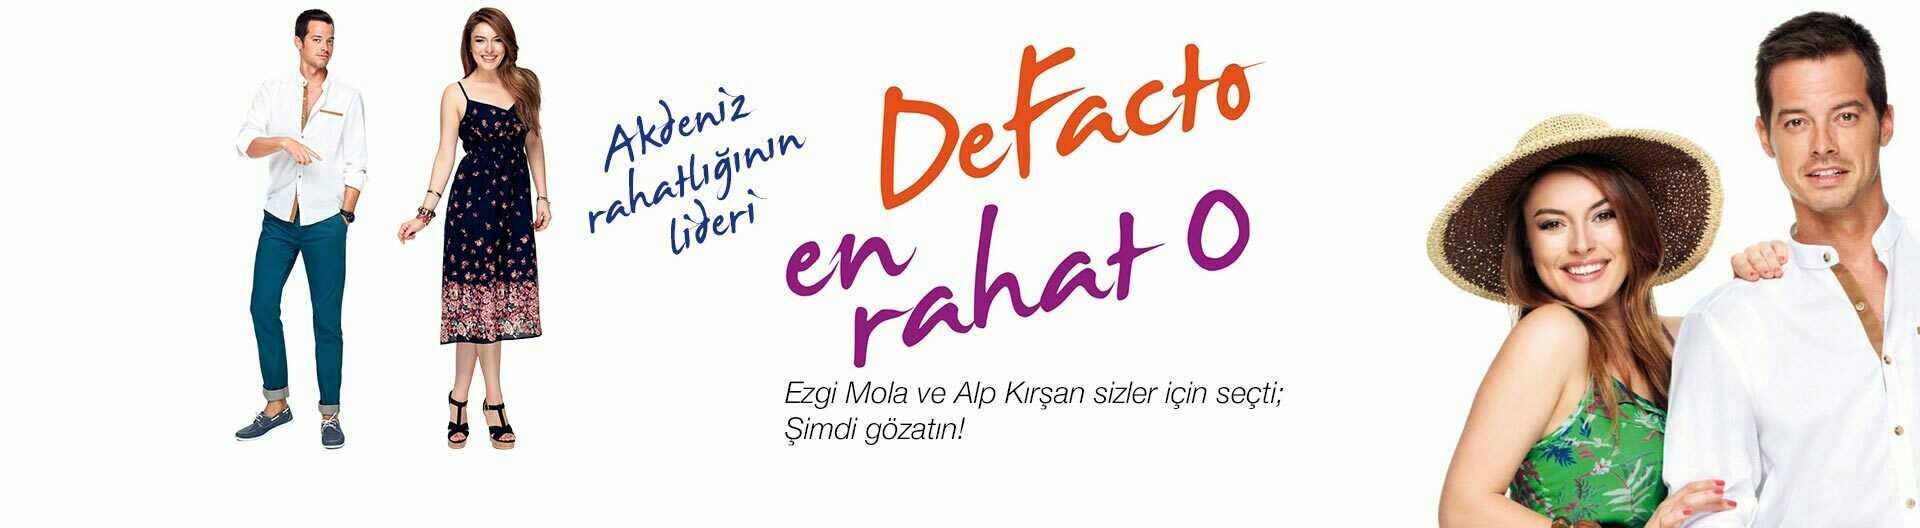 DeFacto популярнейший турецкий бренд молодежной одежды в интернет-магазине